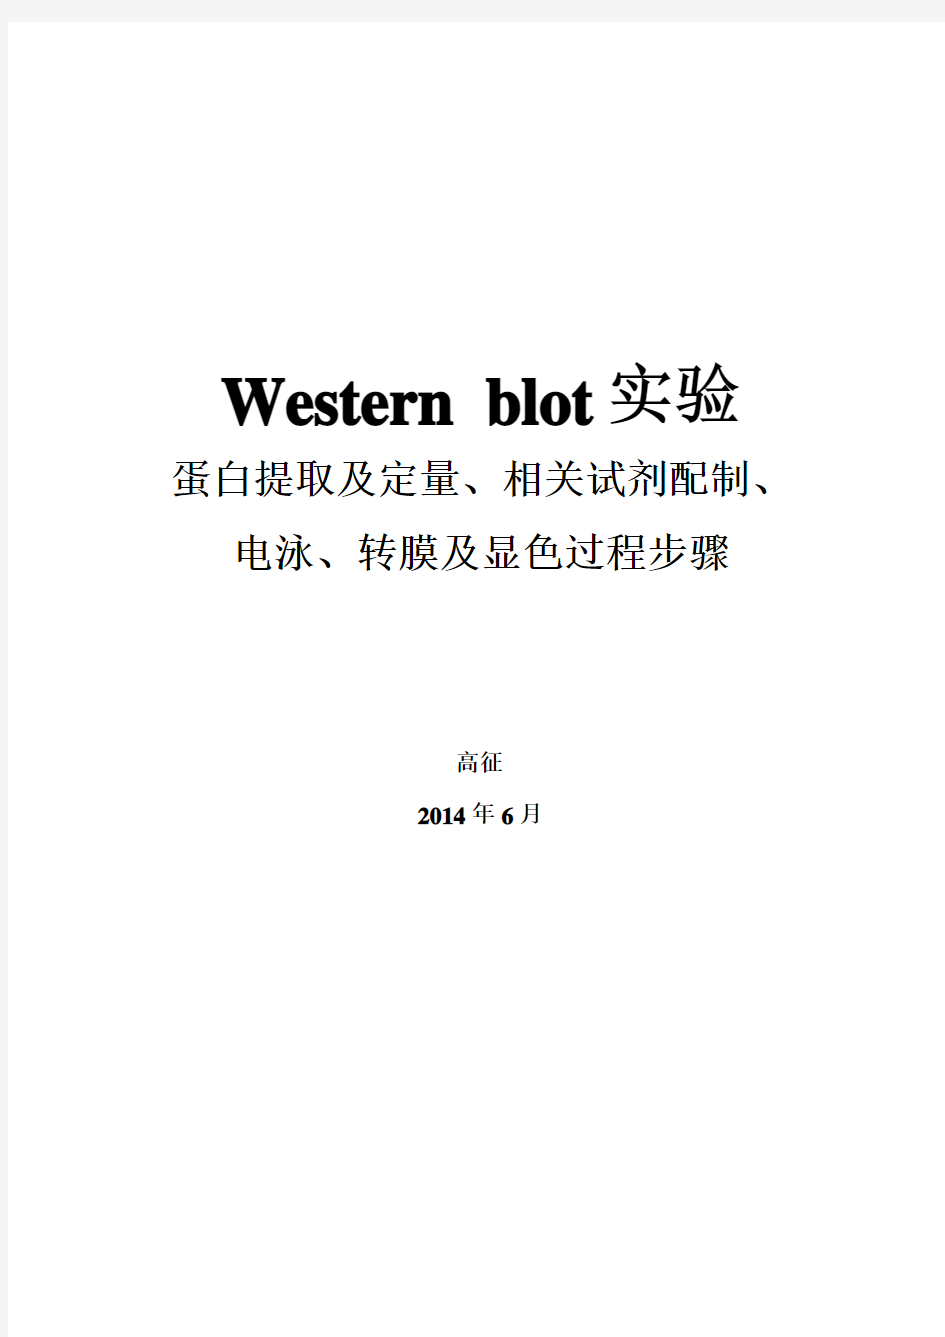 Western blot步骤实验蛋白提取及定量、相关试剂配制、电泳转膜及显色过程(全) (1)